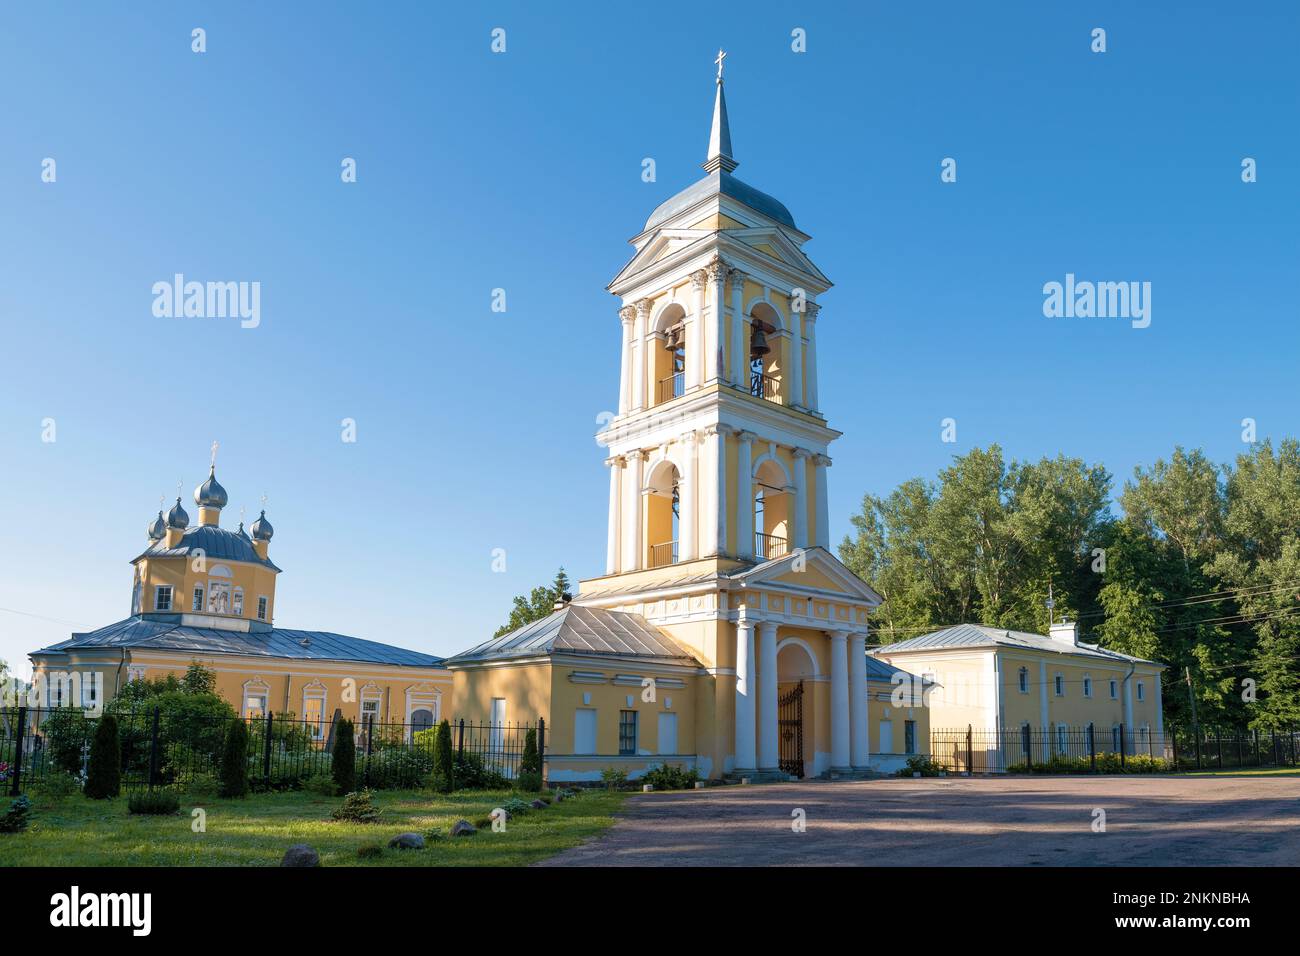 At the ancient Anthony-Leokhnovsky Spaso-Preobrazhensky Monastery on June morning. Leokhnovo. Novgorod region, Russia Stock Photo